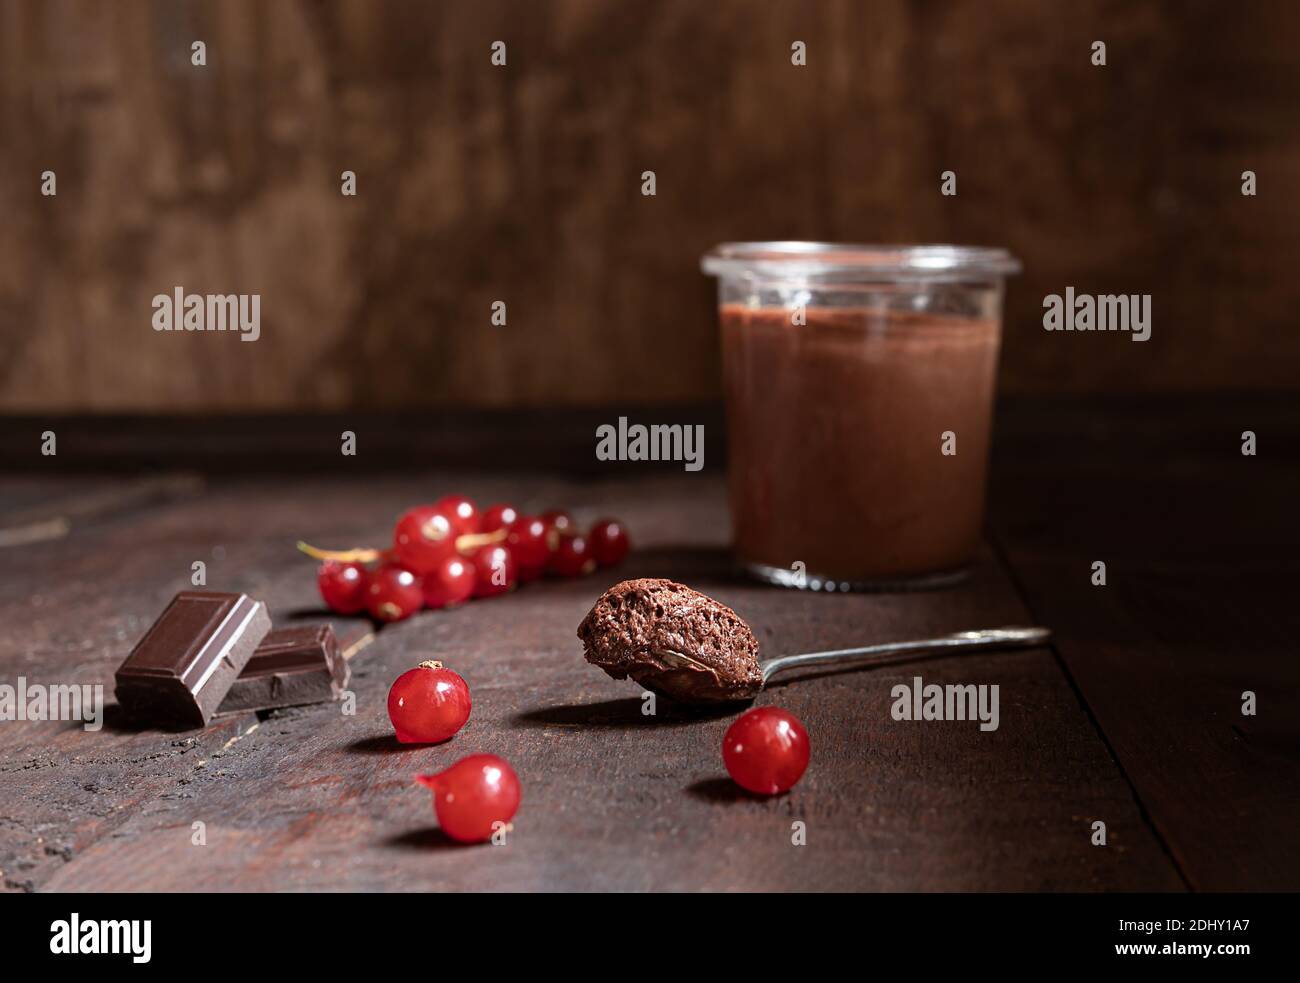 Un verre et une cuillère à café avec mousse au chocolat, morceaux de chocolat noir et baies de cassis sur fond de bois Banque D'Images